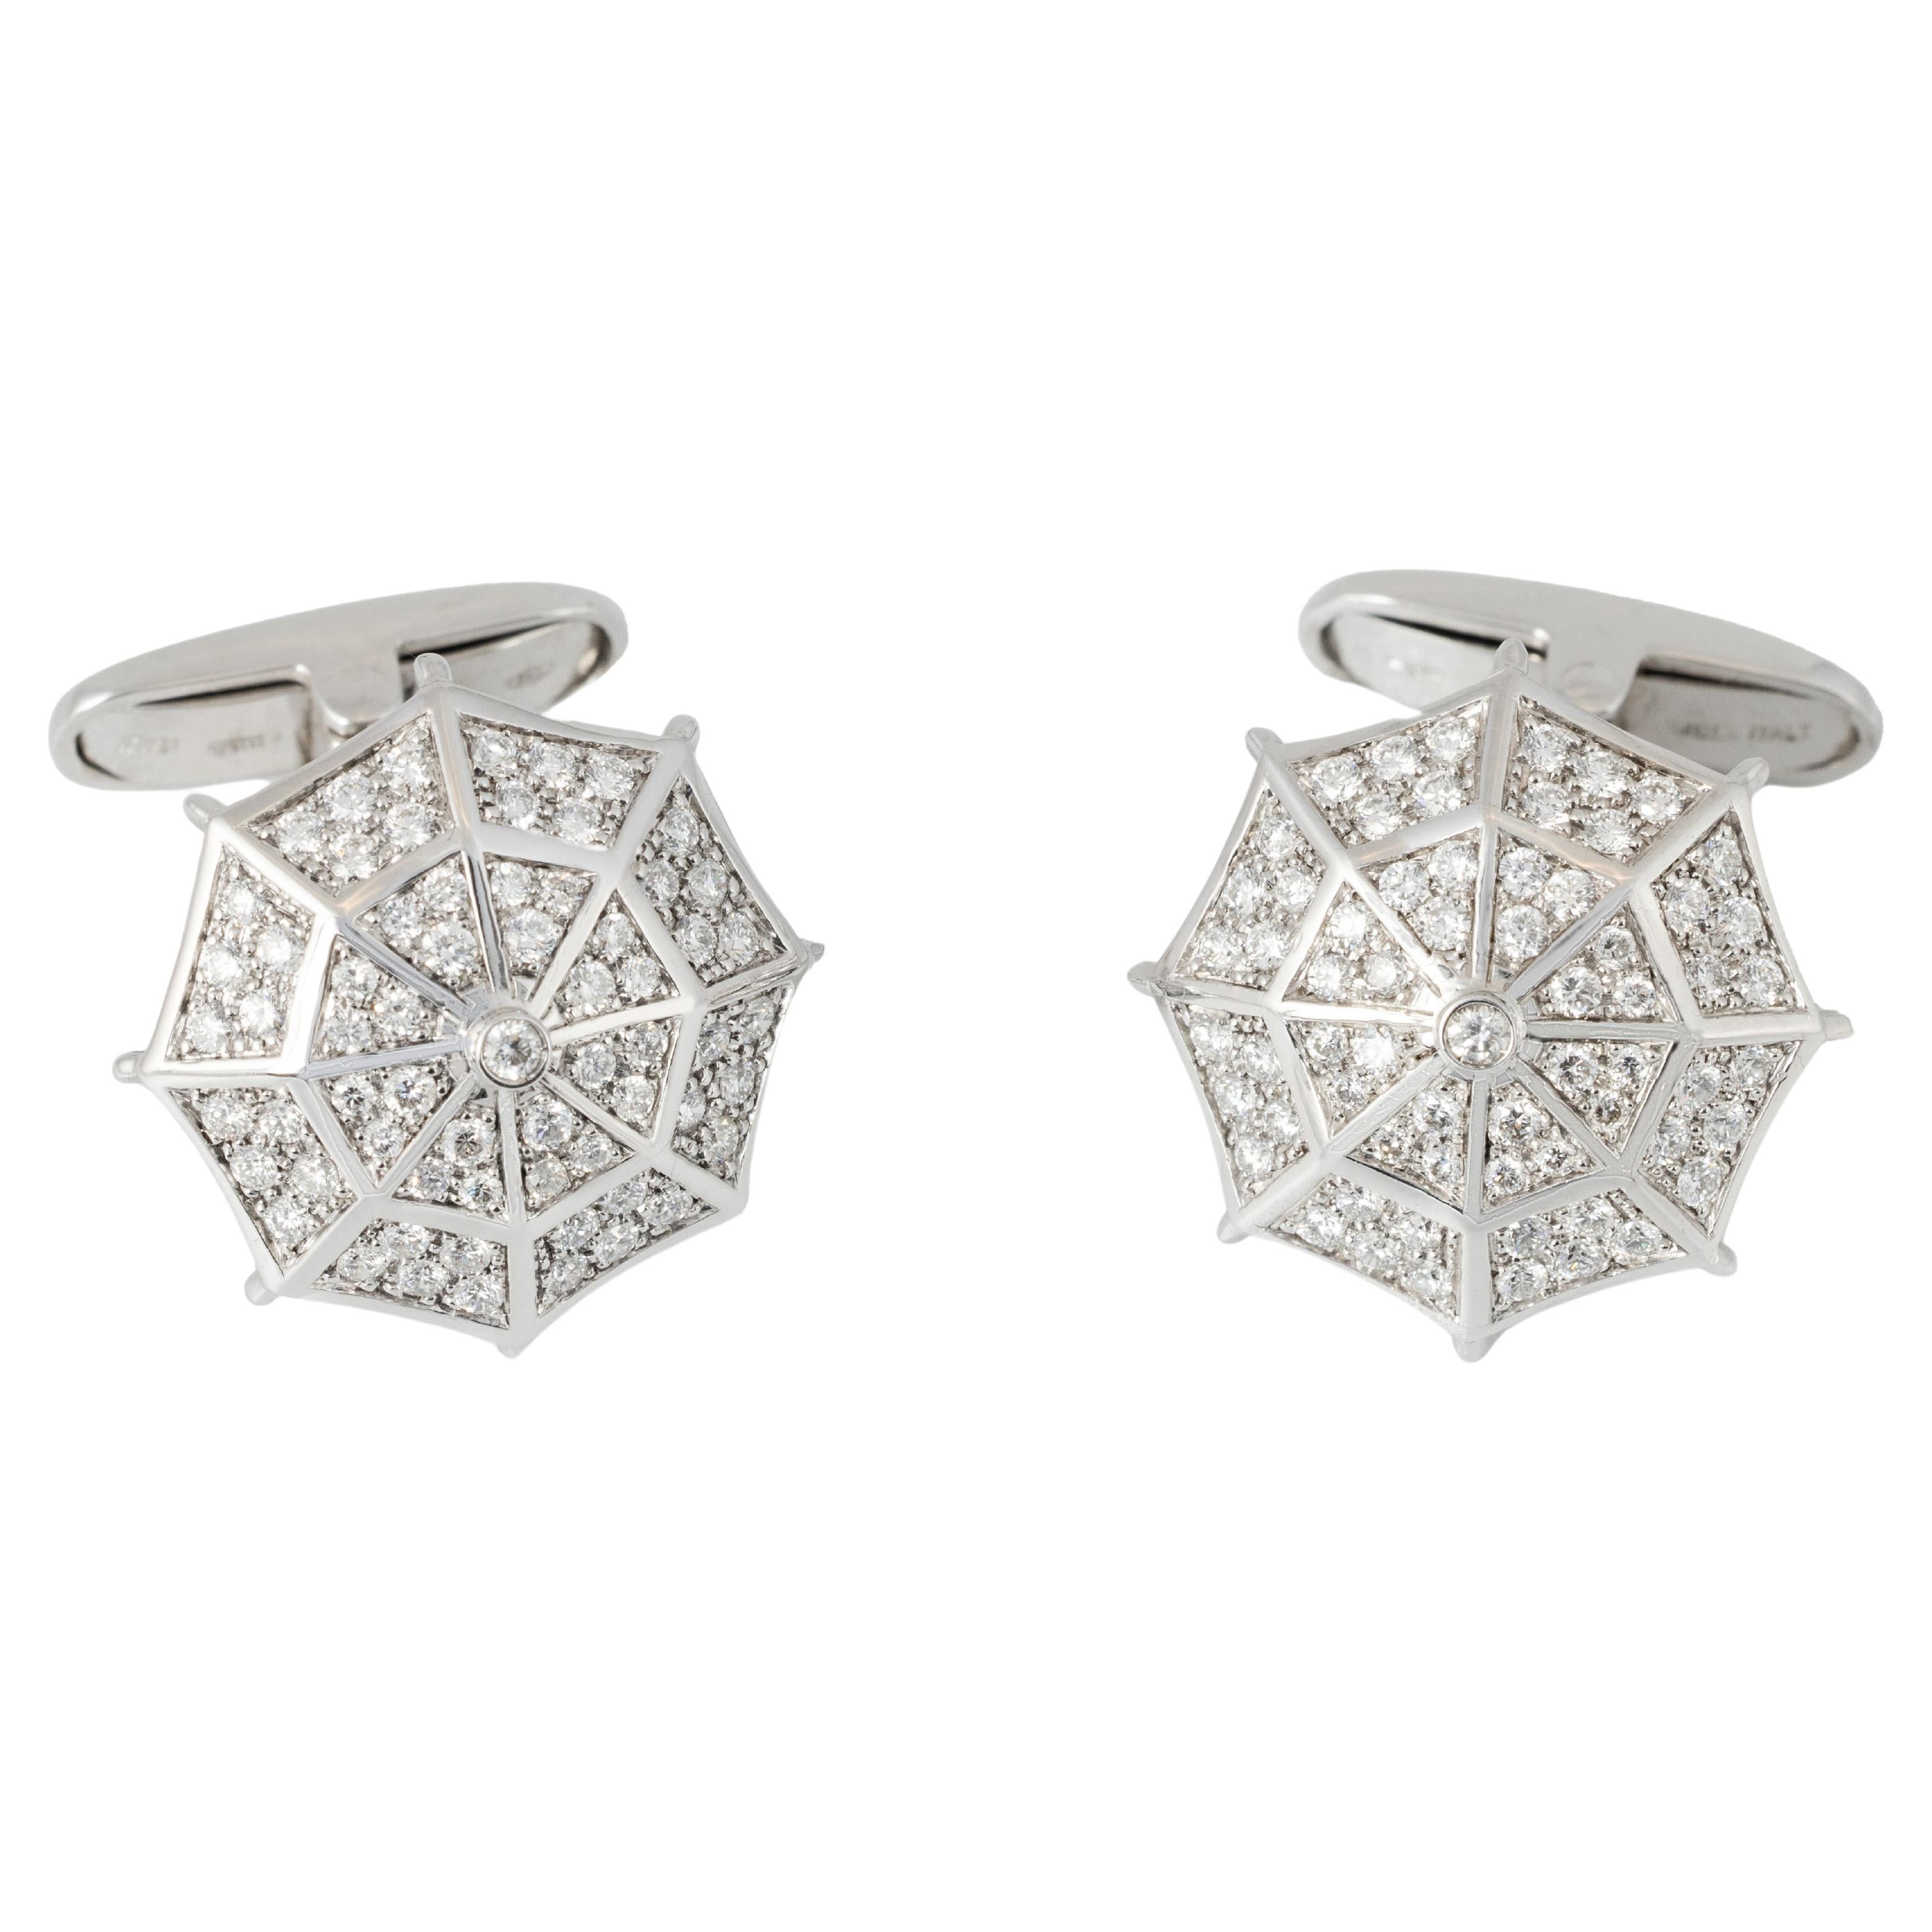 "Costis" Umbrella Collection Manschettenknöpfe WG - Pave' mit 1,19 Karat Diamanten  im Angebot